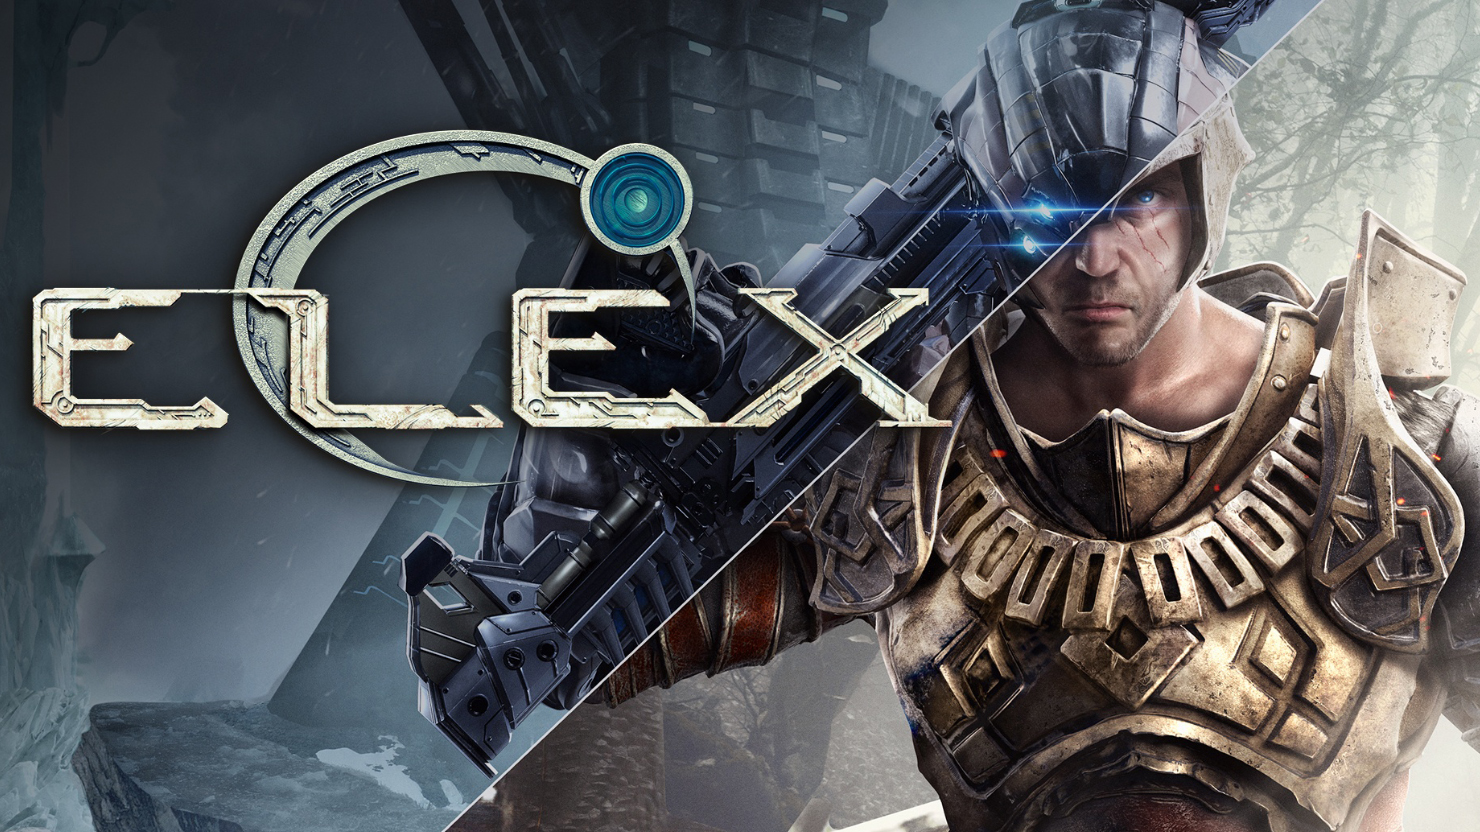 elex 2 gamepass